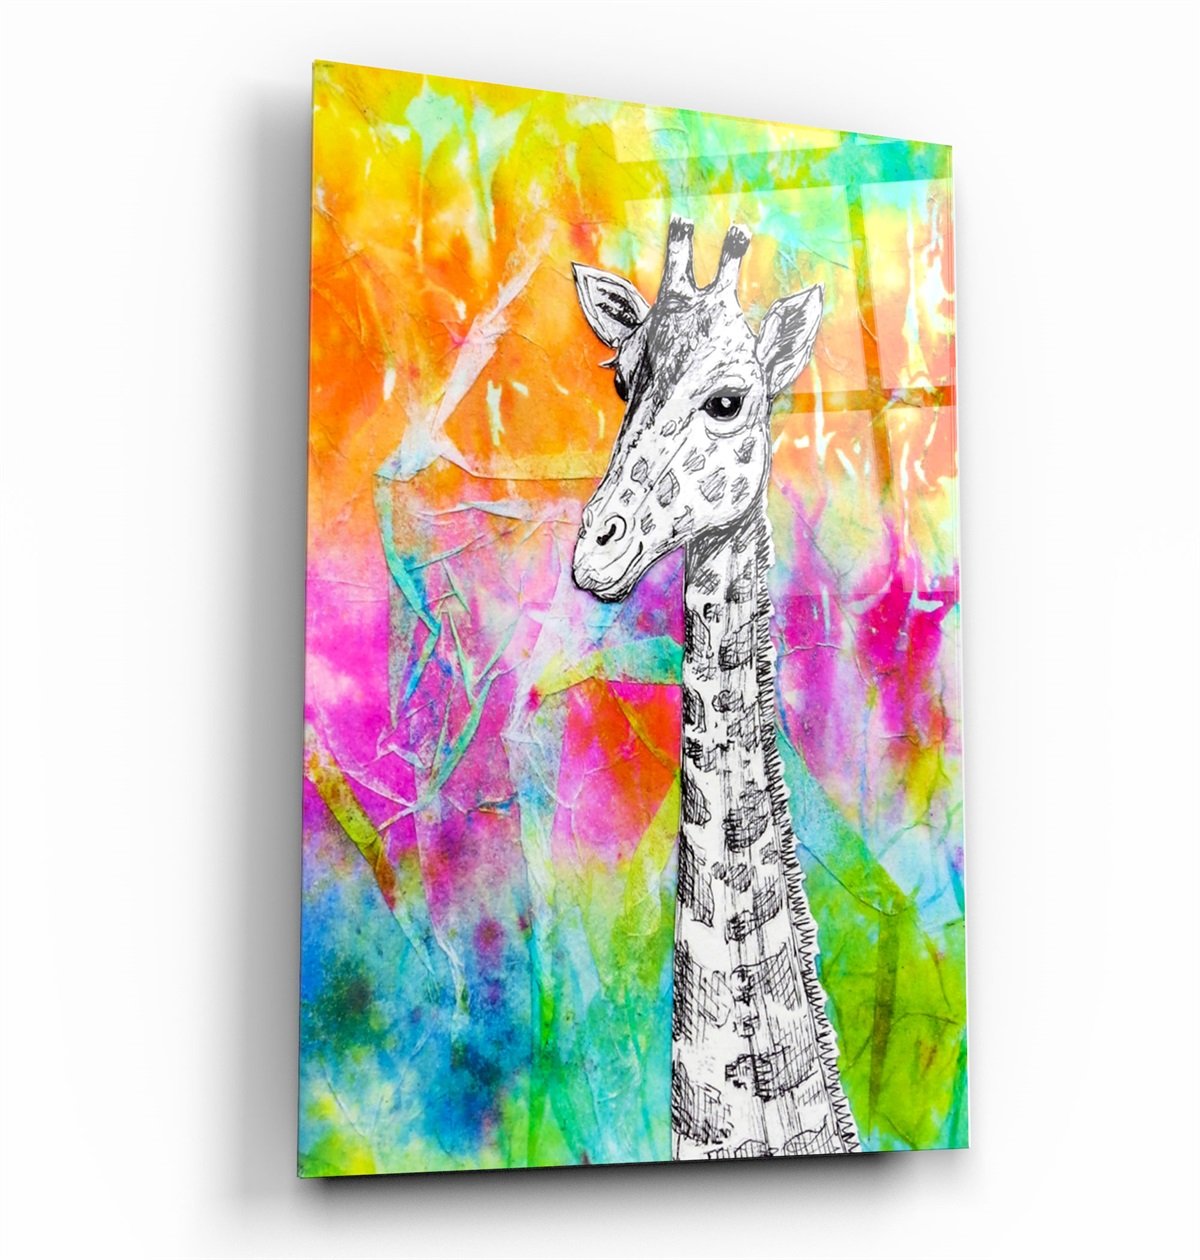 ・"Giraffe"・Glass Wall Art